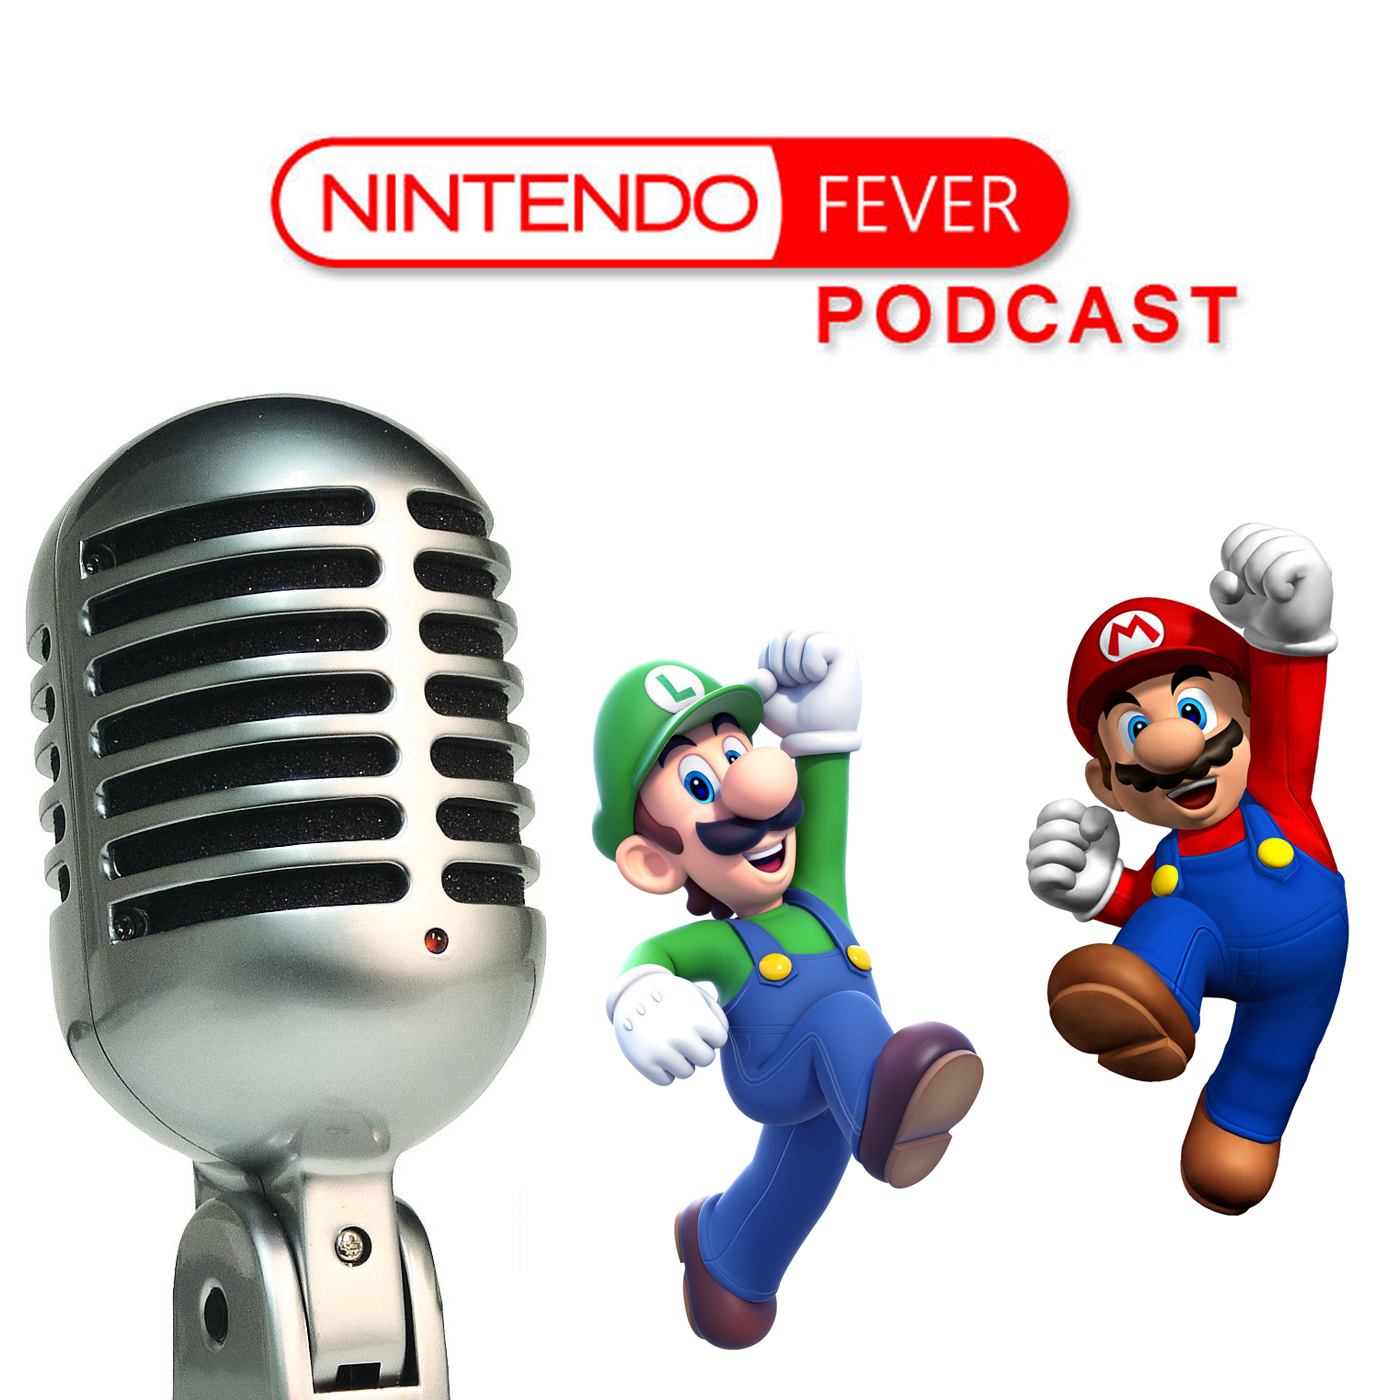 NintendoFever Podcast Episode 102: Japan